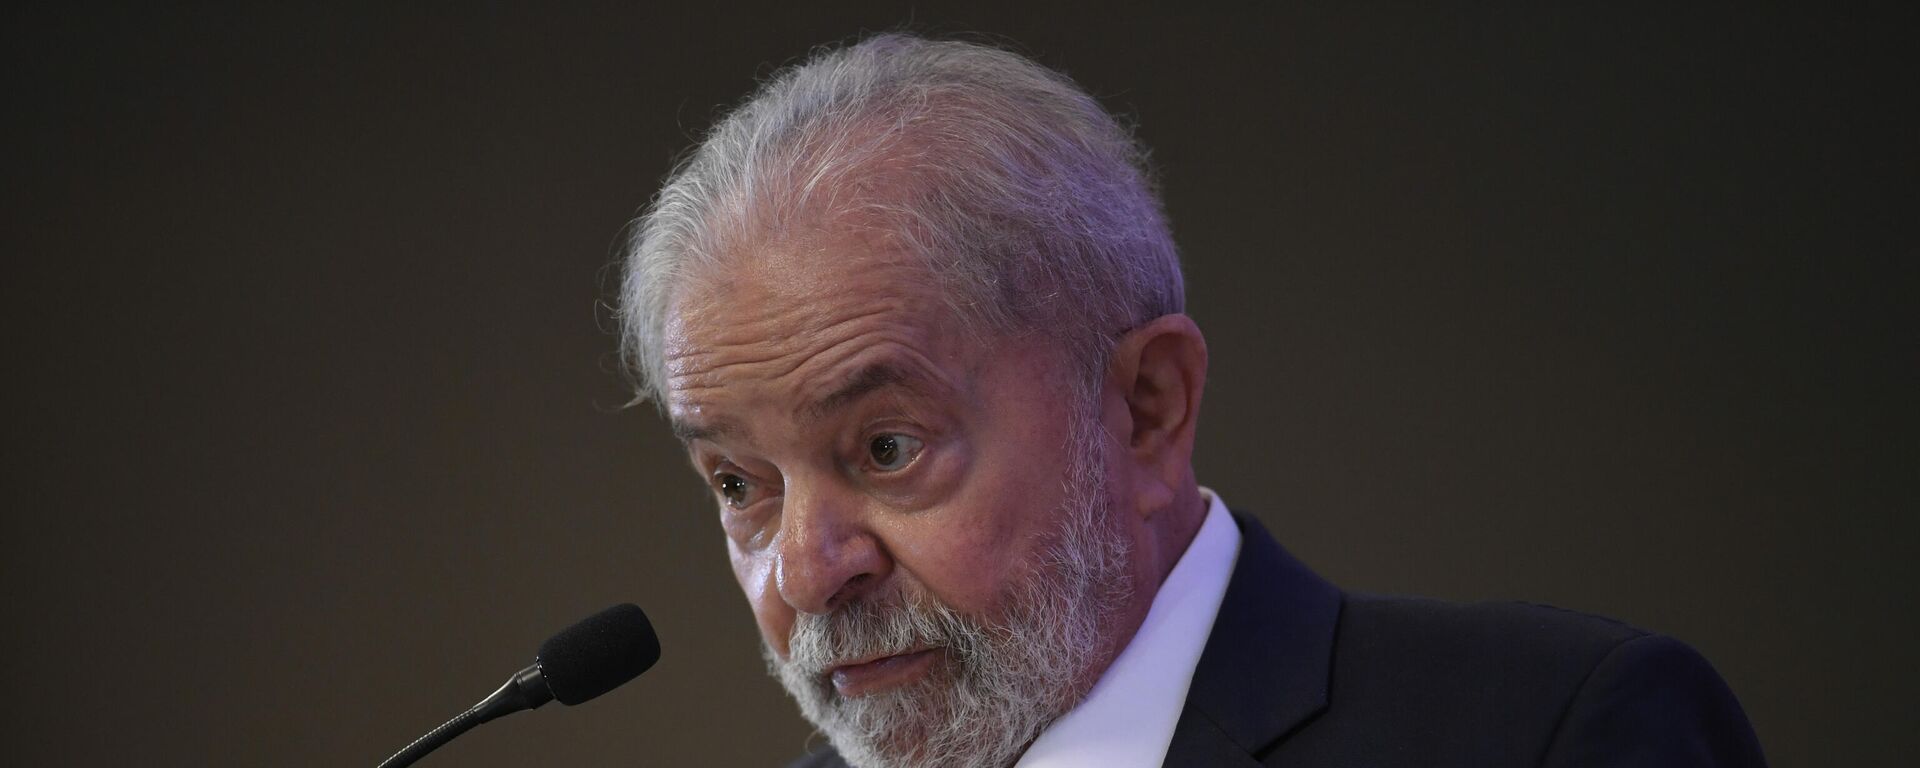 O ex-presidente Luiz Inácio Lula da Silva (PT) durante coletiva de imprensa realizada em Brasília, nesta sexta-feira - Sputnik Brasil, 1920, 26.01.2022